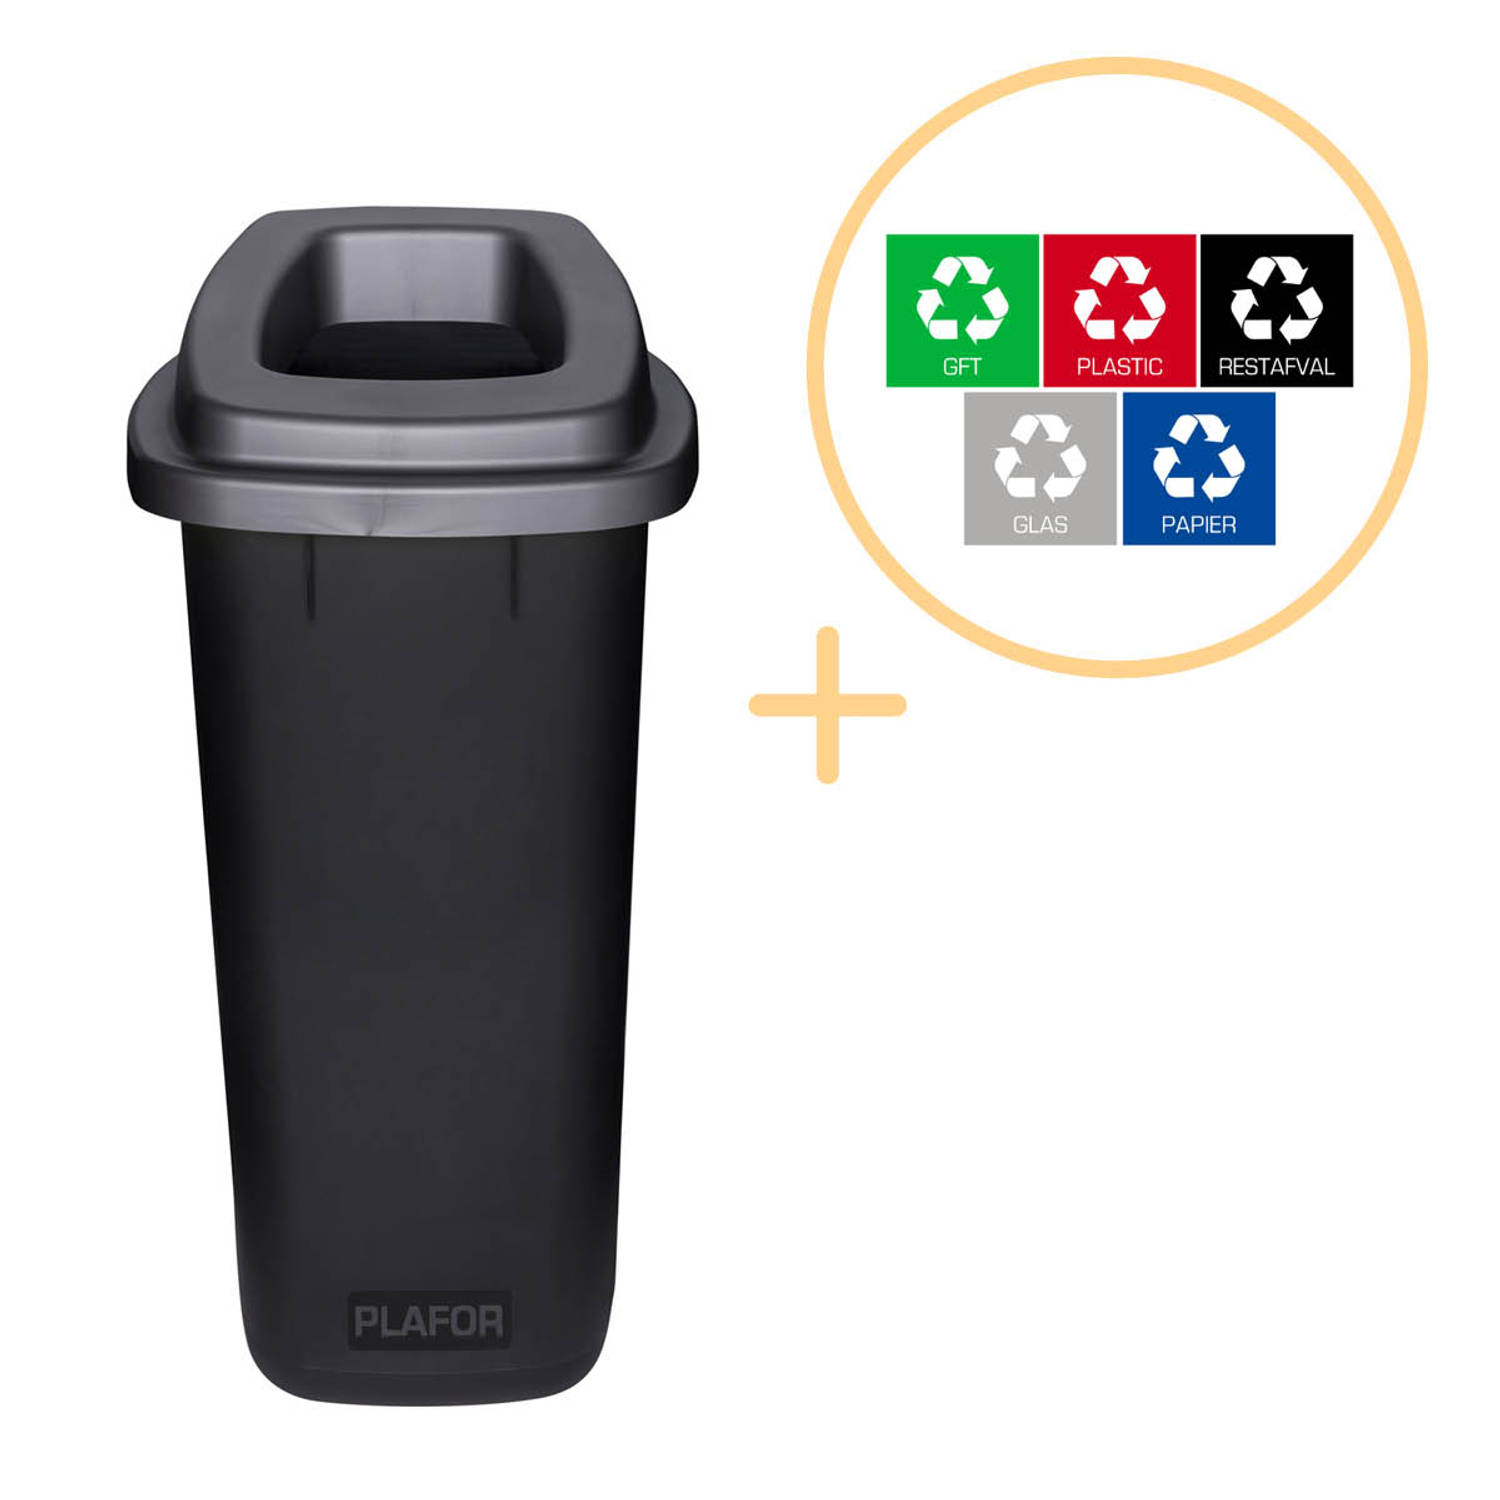 Plafor Sort Bin, Prullenbak voor afvalscheiding - 90L – Zwart- Inclusief 5-delige Stickerset - Afvalbak voor gemakkelijk Afval Scheiden en Recycling - Afvalemmer - Vuilnisbak voor